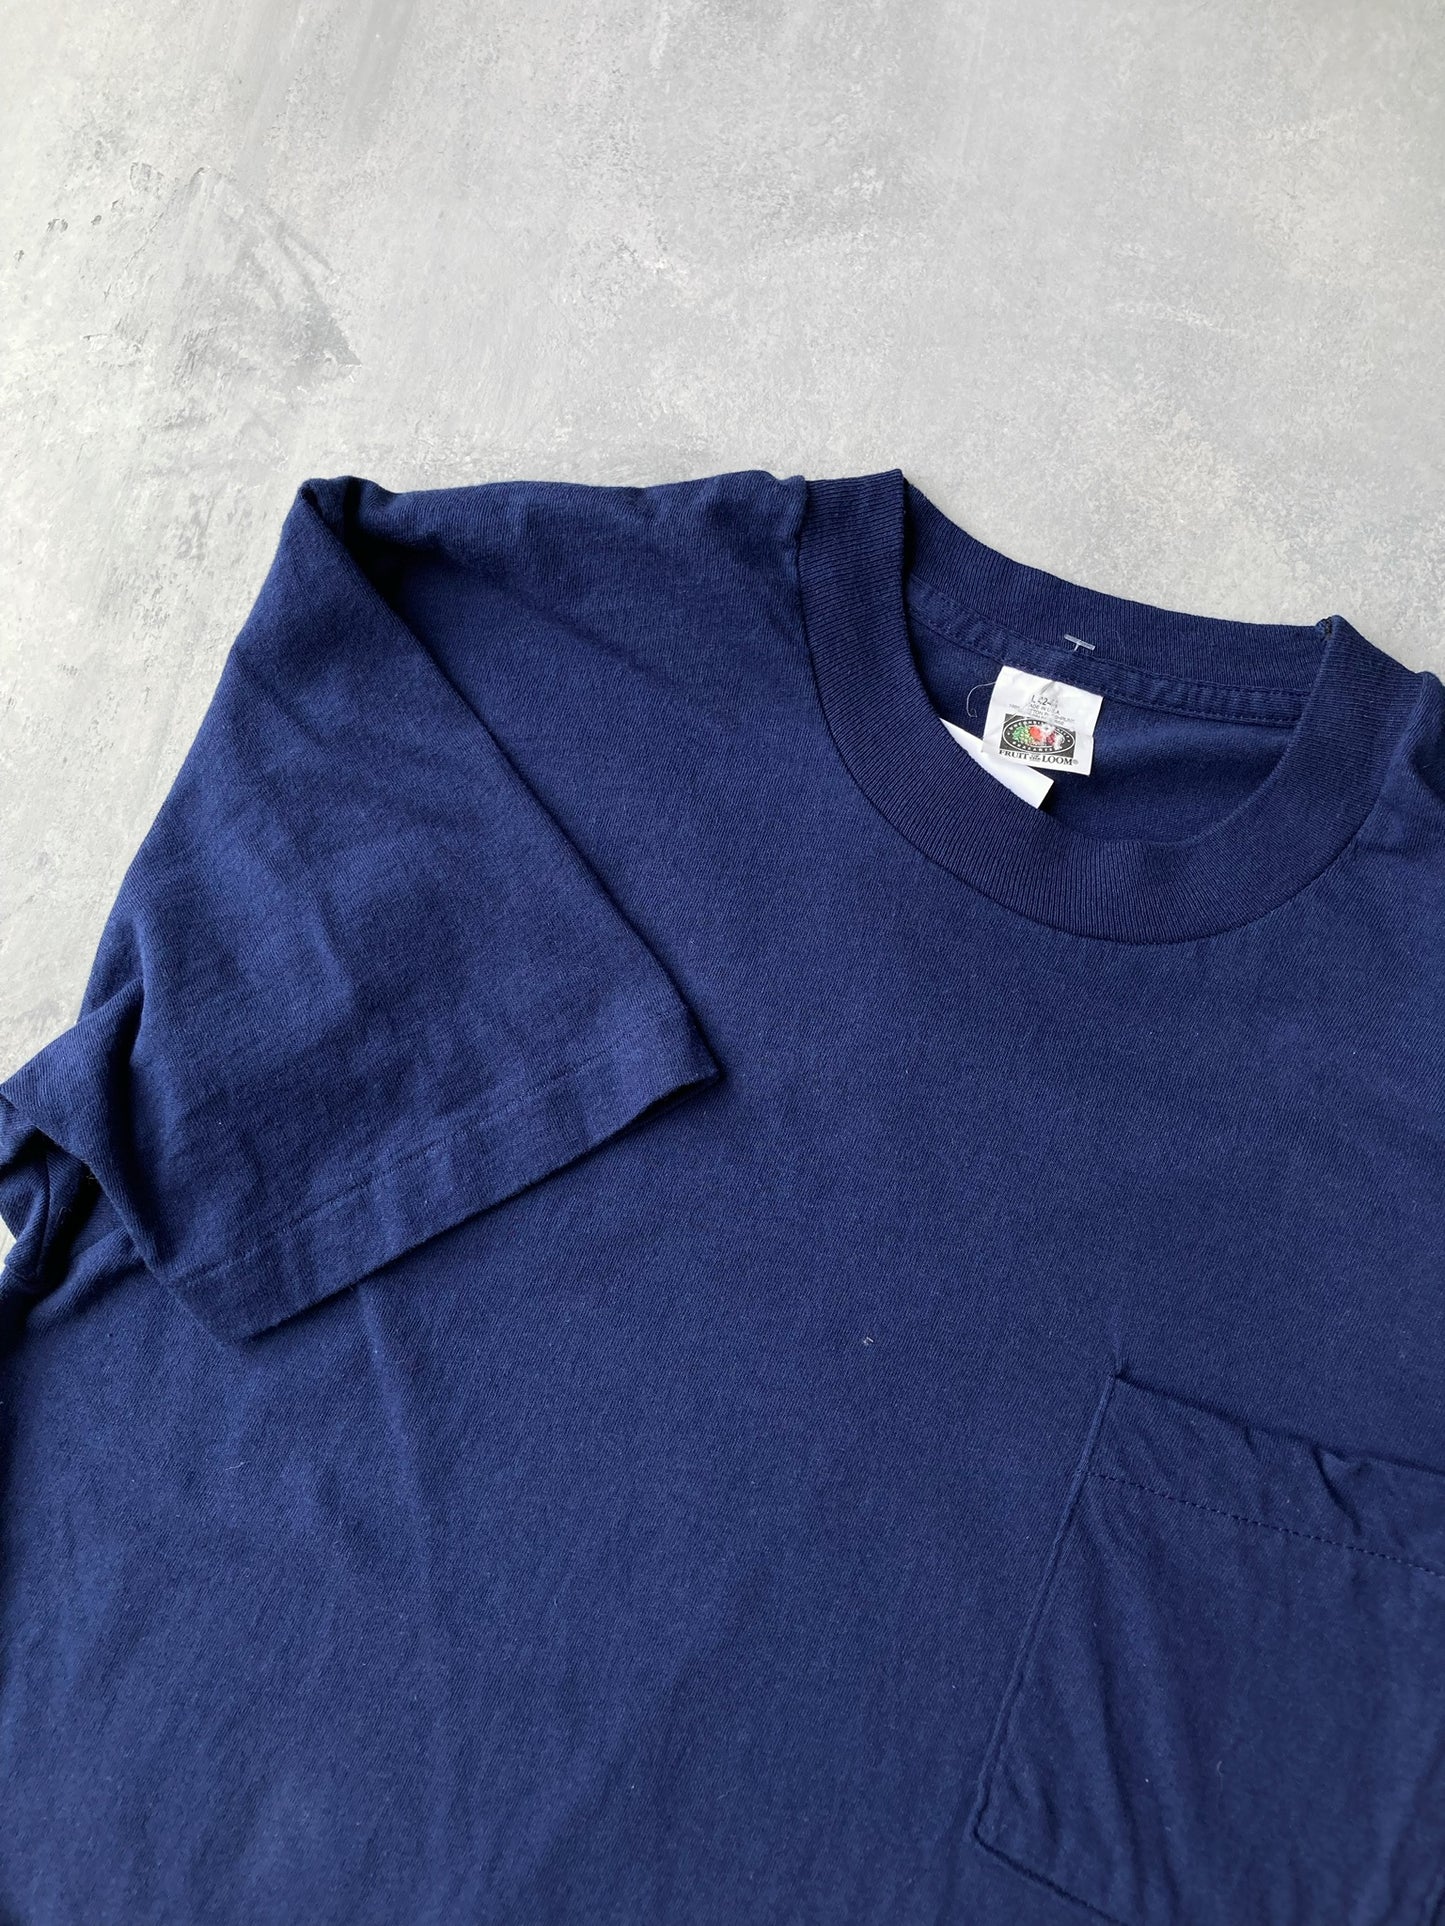 Solid Dark Blue Pocket T-Shirt - Large